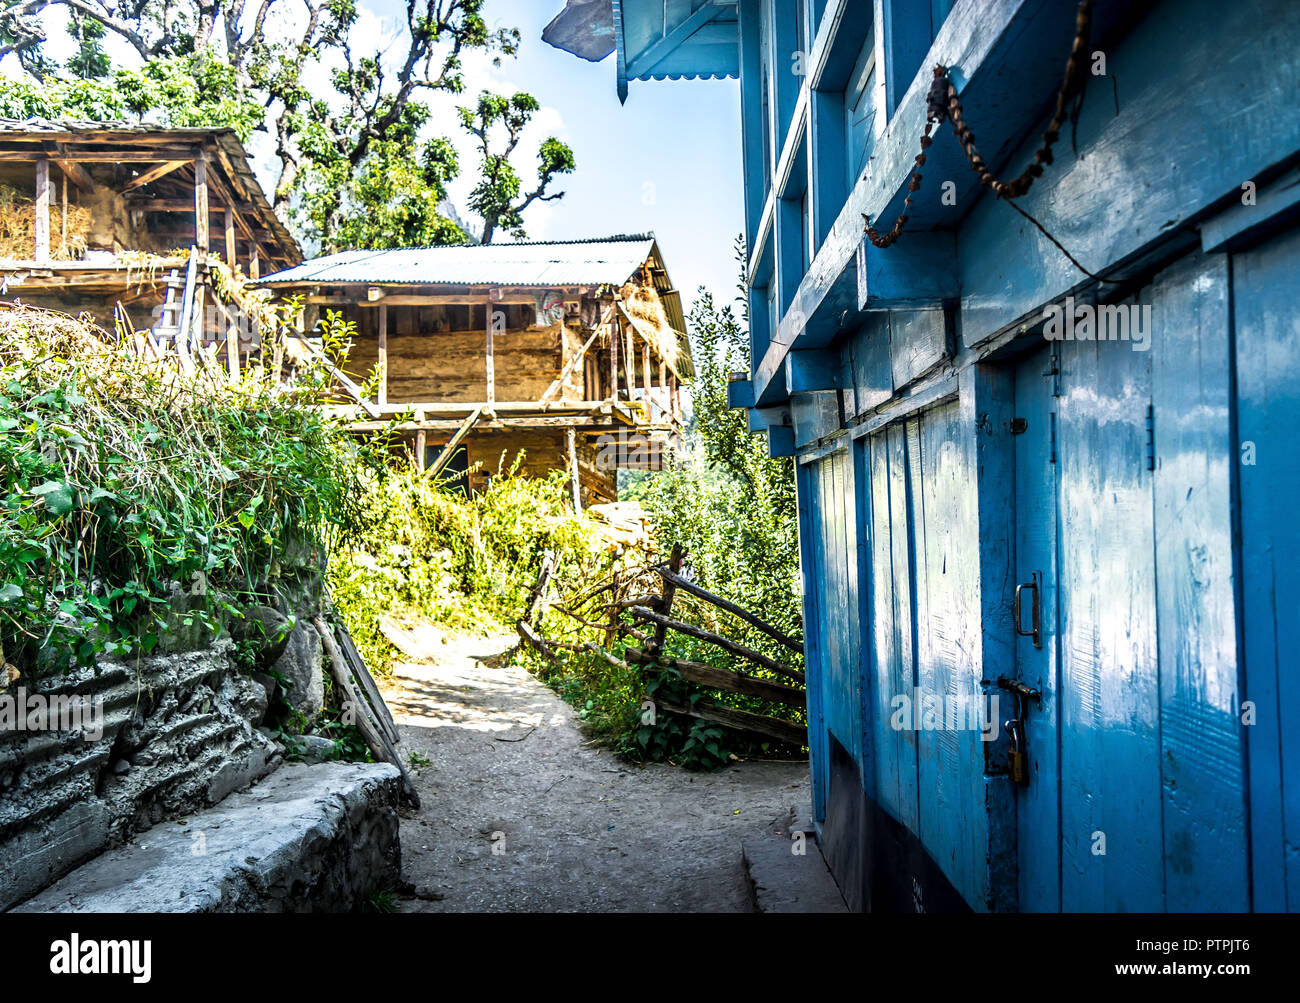 A local Himachali house on Kherrganga trail Stock Photo